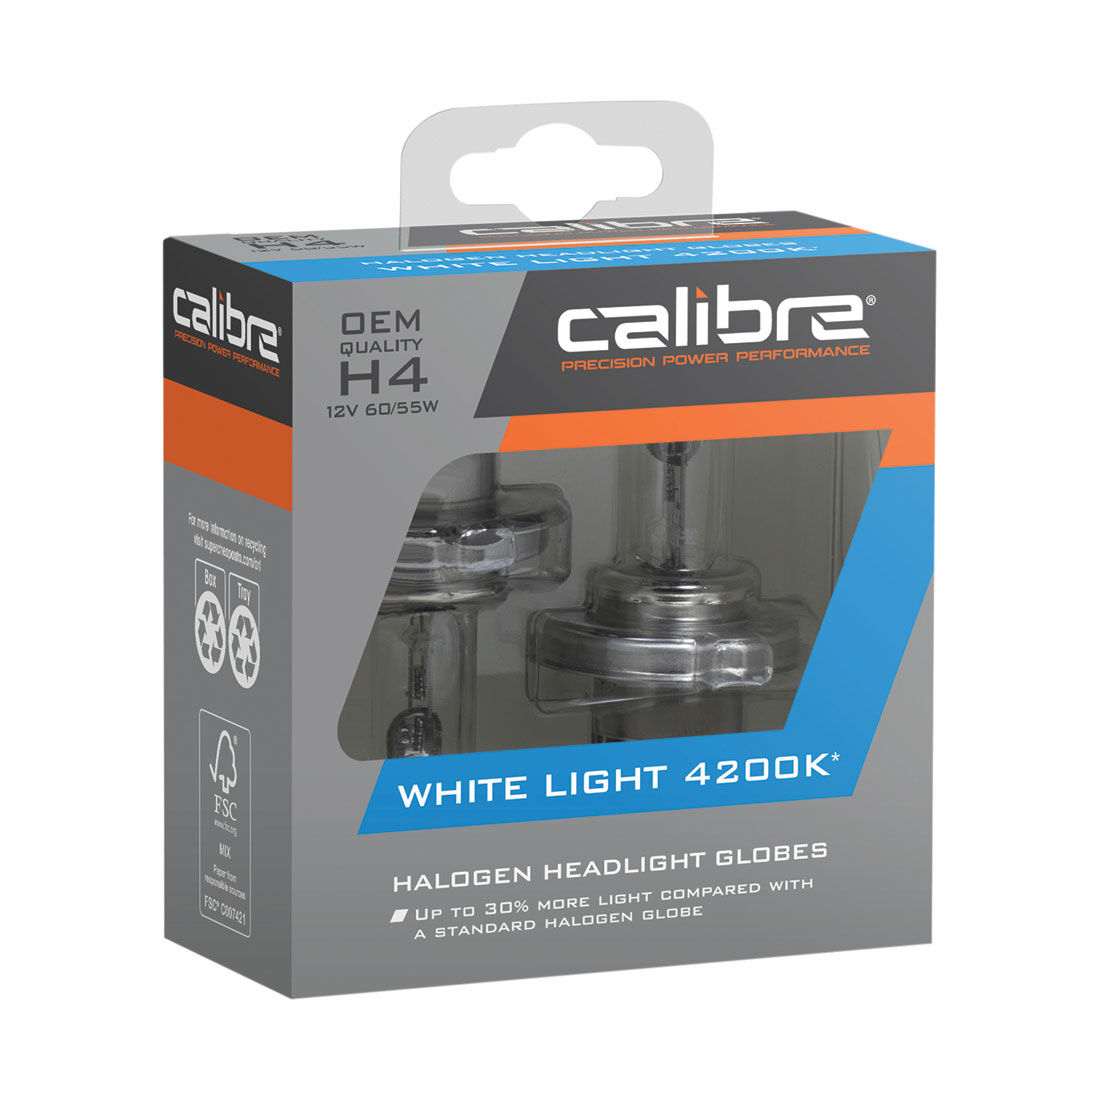 Calibre White Light 4200K Headlight Globes - H4, 12V 60W, CA4200H4, , scaau_hi-res